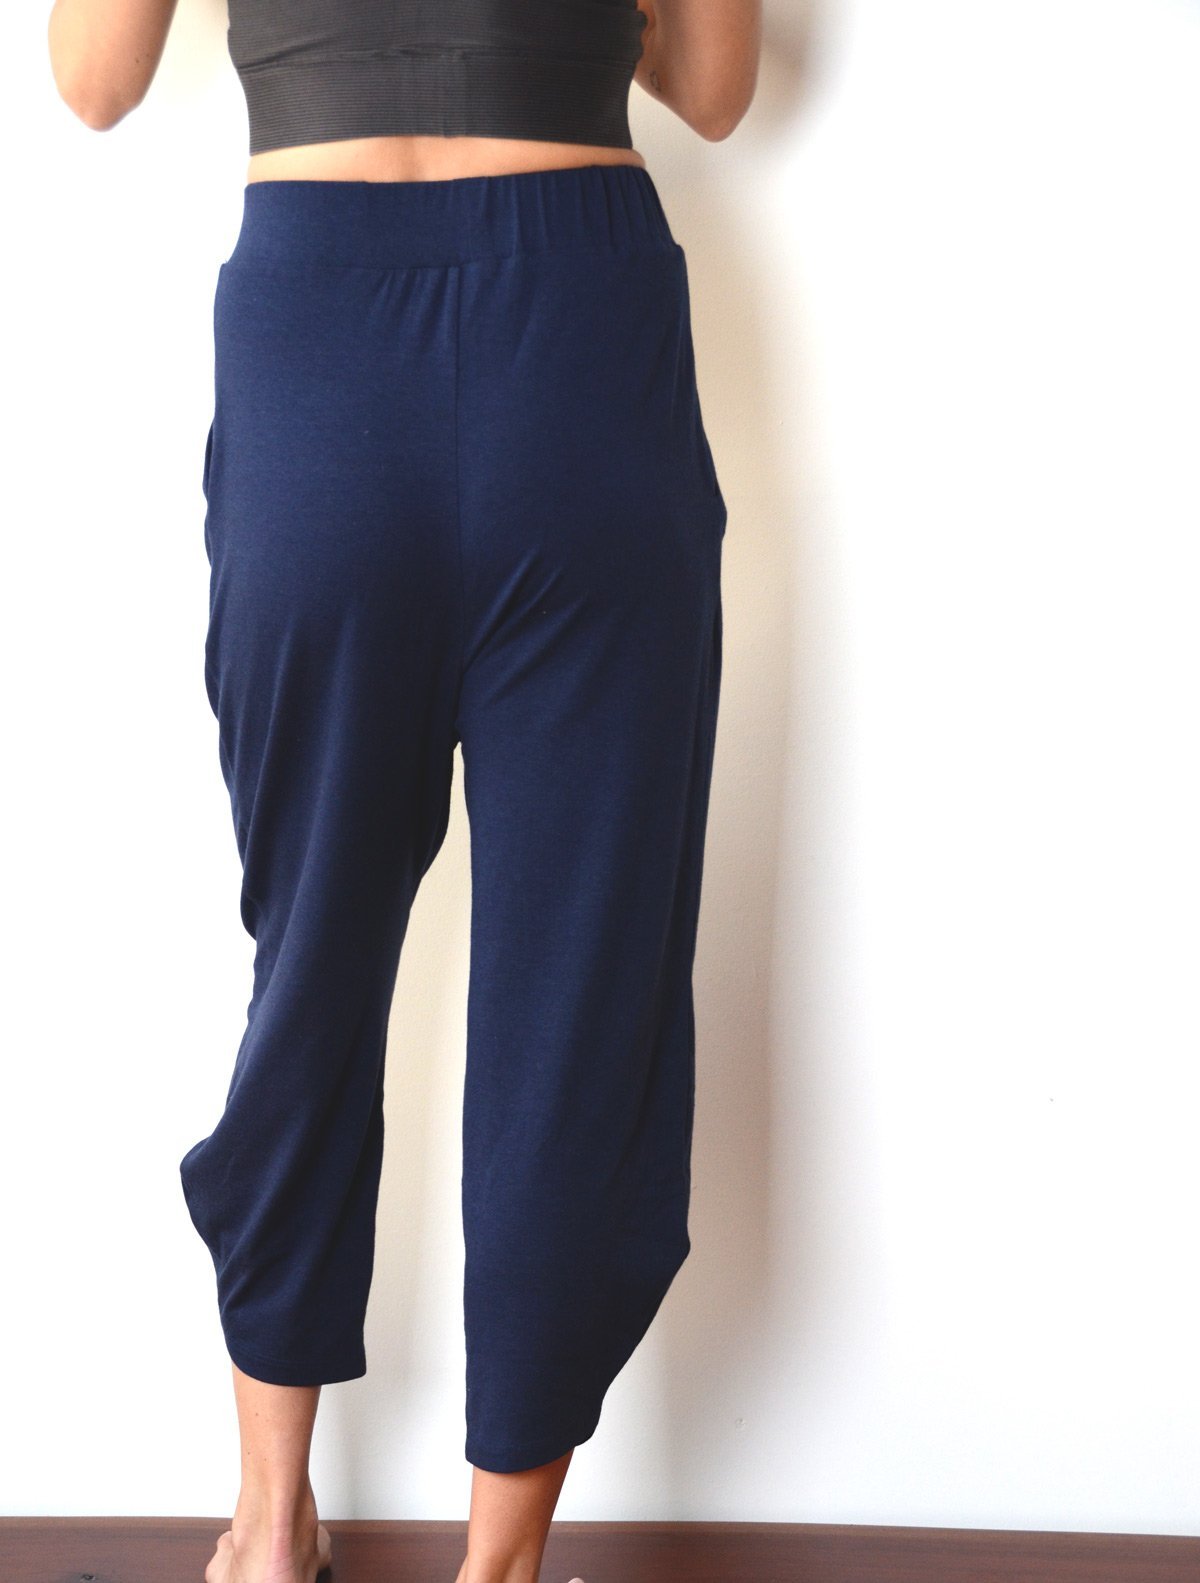 LoyisViDion Mens Pants Clearance Men'S Solid Color Cotton Hemp Large Harem  Pants Wide Leg Pants Navy 18(XXXXXL) - Walmart.com